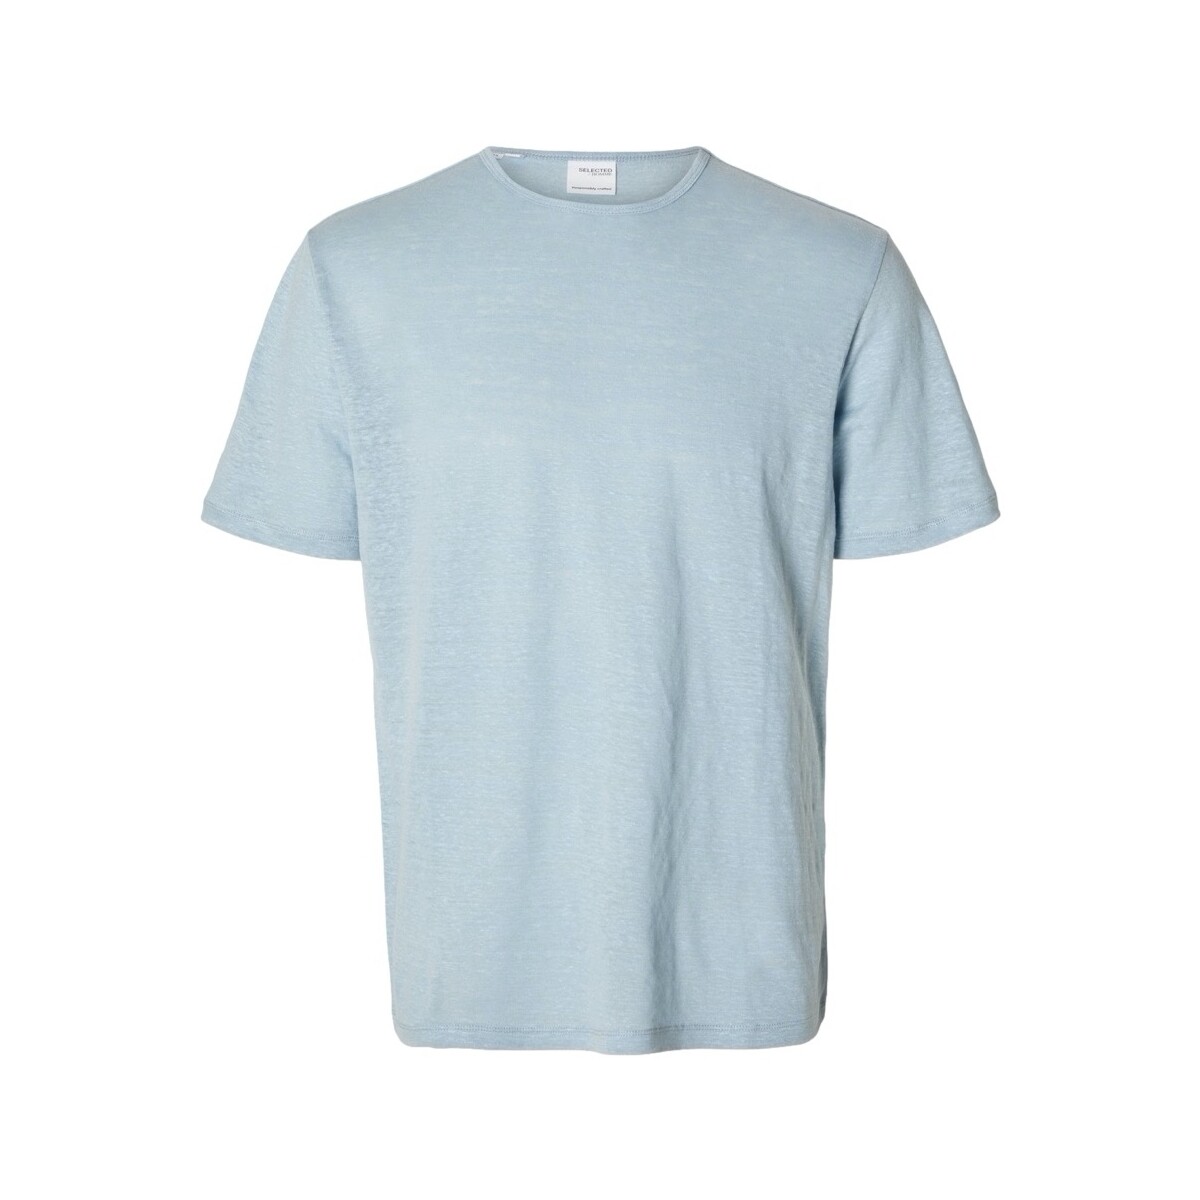 Ruhák Férfi Pólók / Galléros Pólók Selected T-Shirt Bet Linen - Cashmere Blue Kék